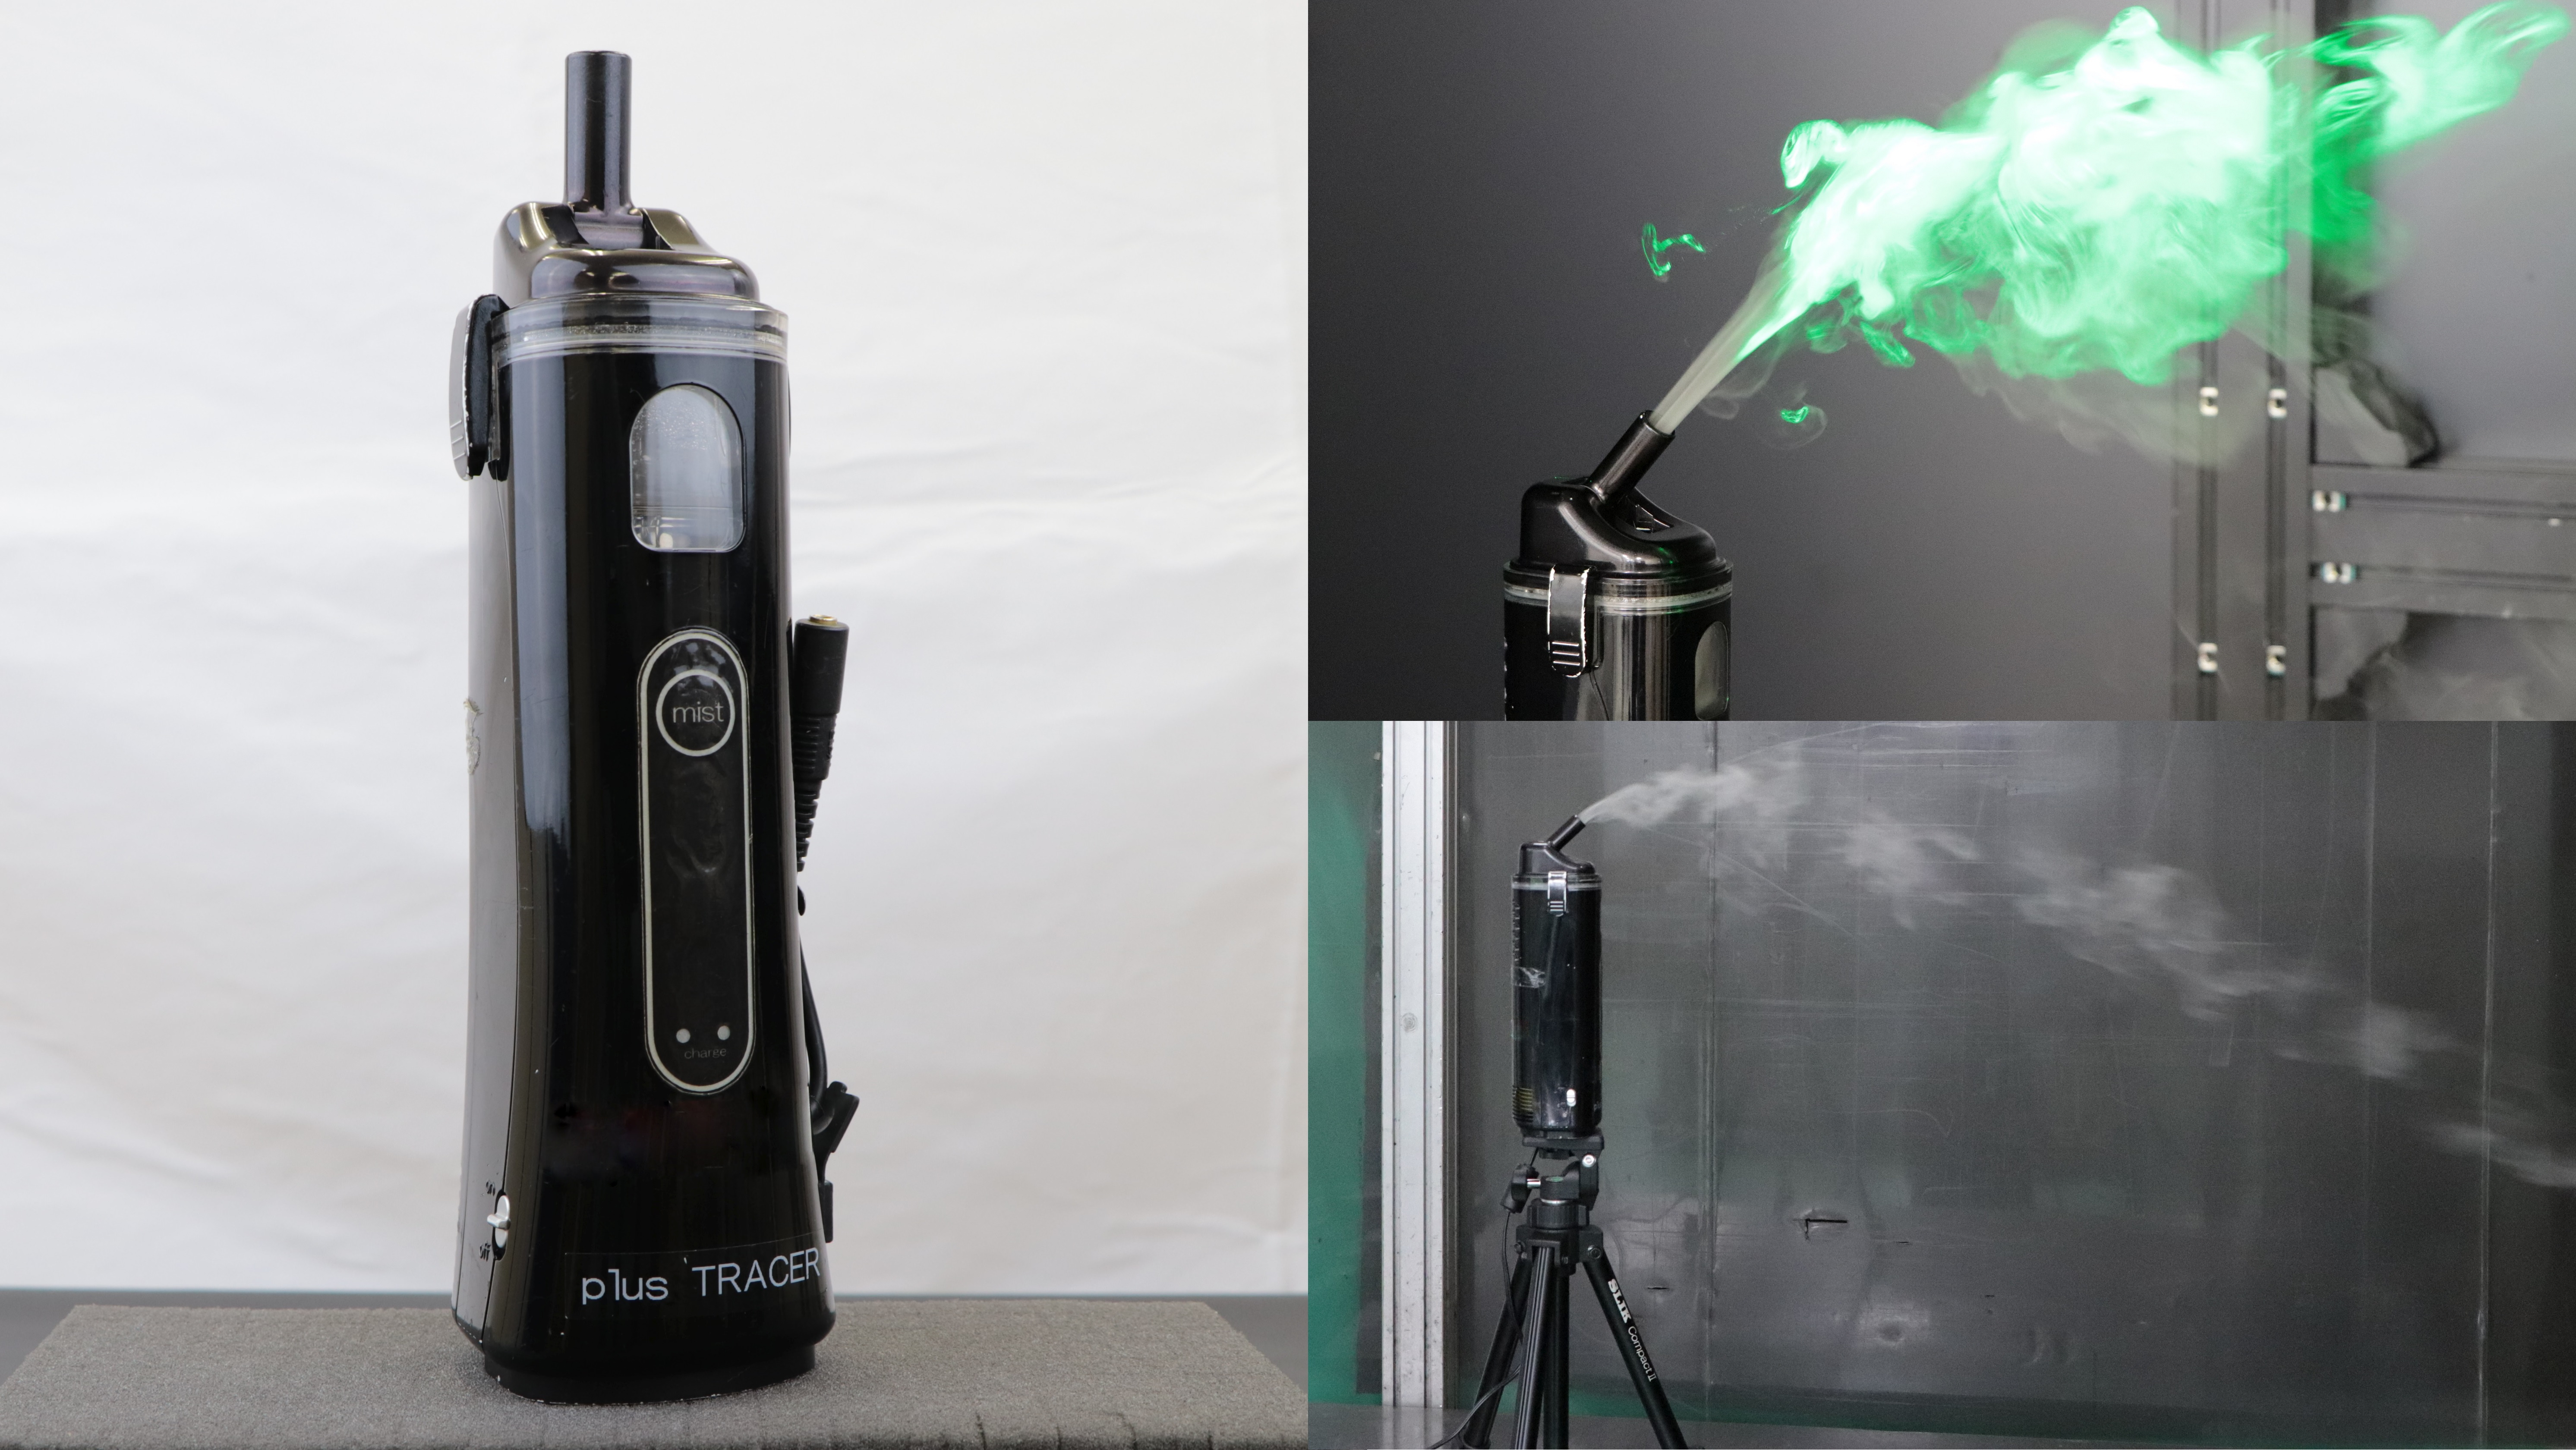 製品情報 ハンディ純水ミスト発生器 Plustracer 集塵機 ミストコレクターの アマノ株式会社